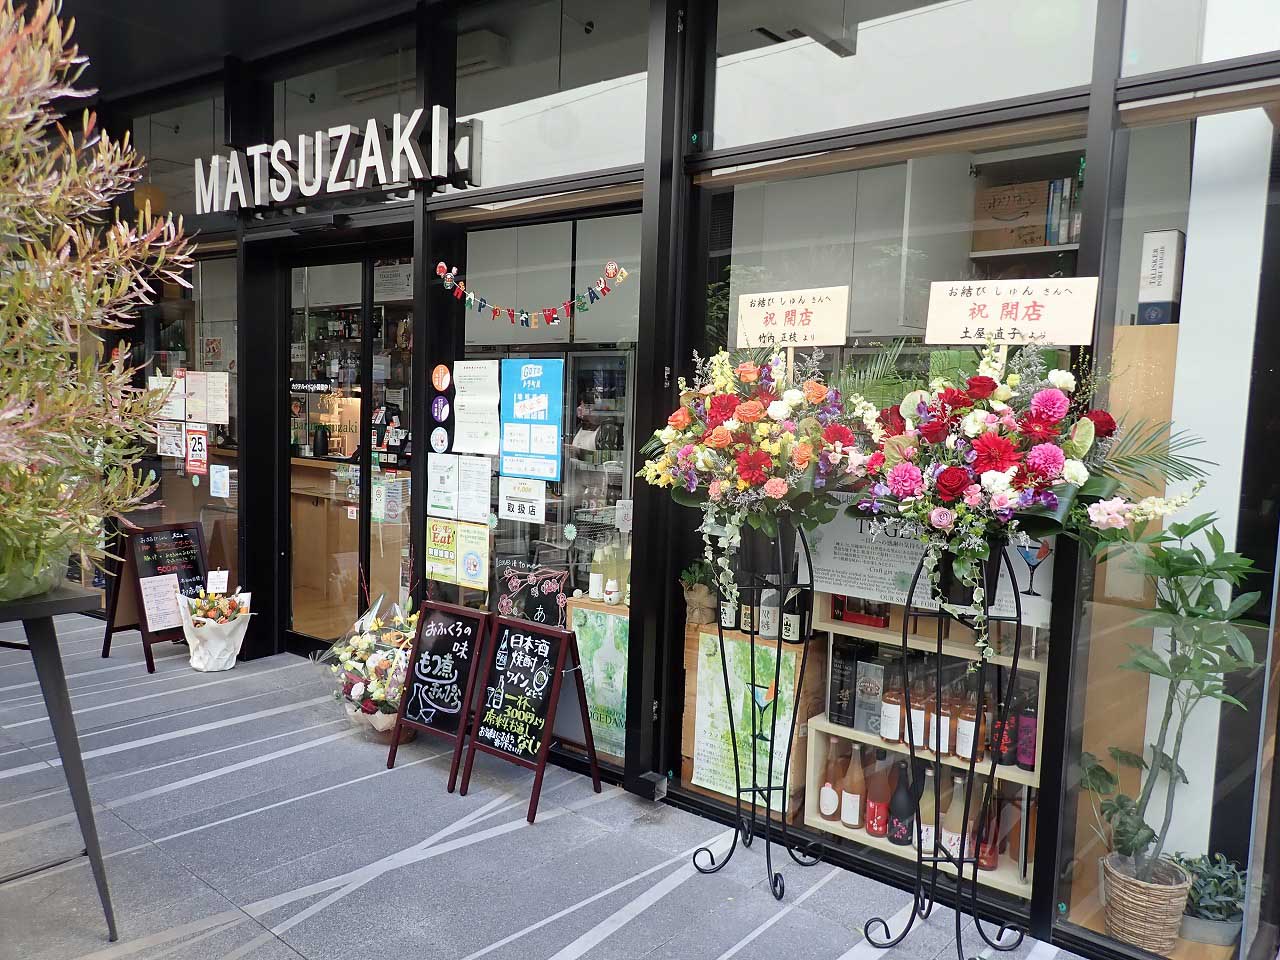 おむすびは「マツザキ U-PLACE川越店 standing bar matsuzaki」のレジカウンターで注文します